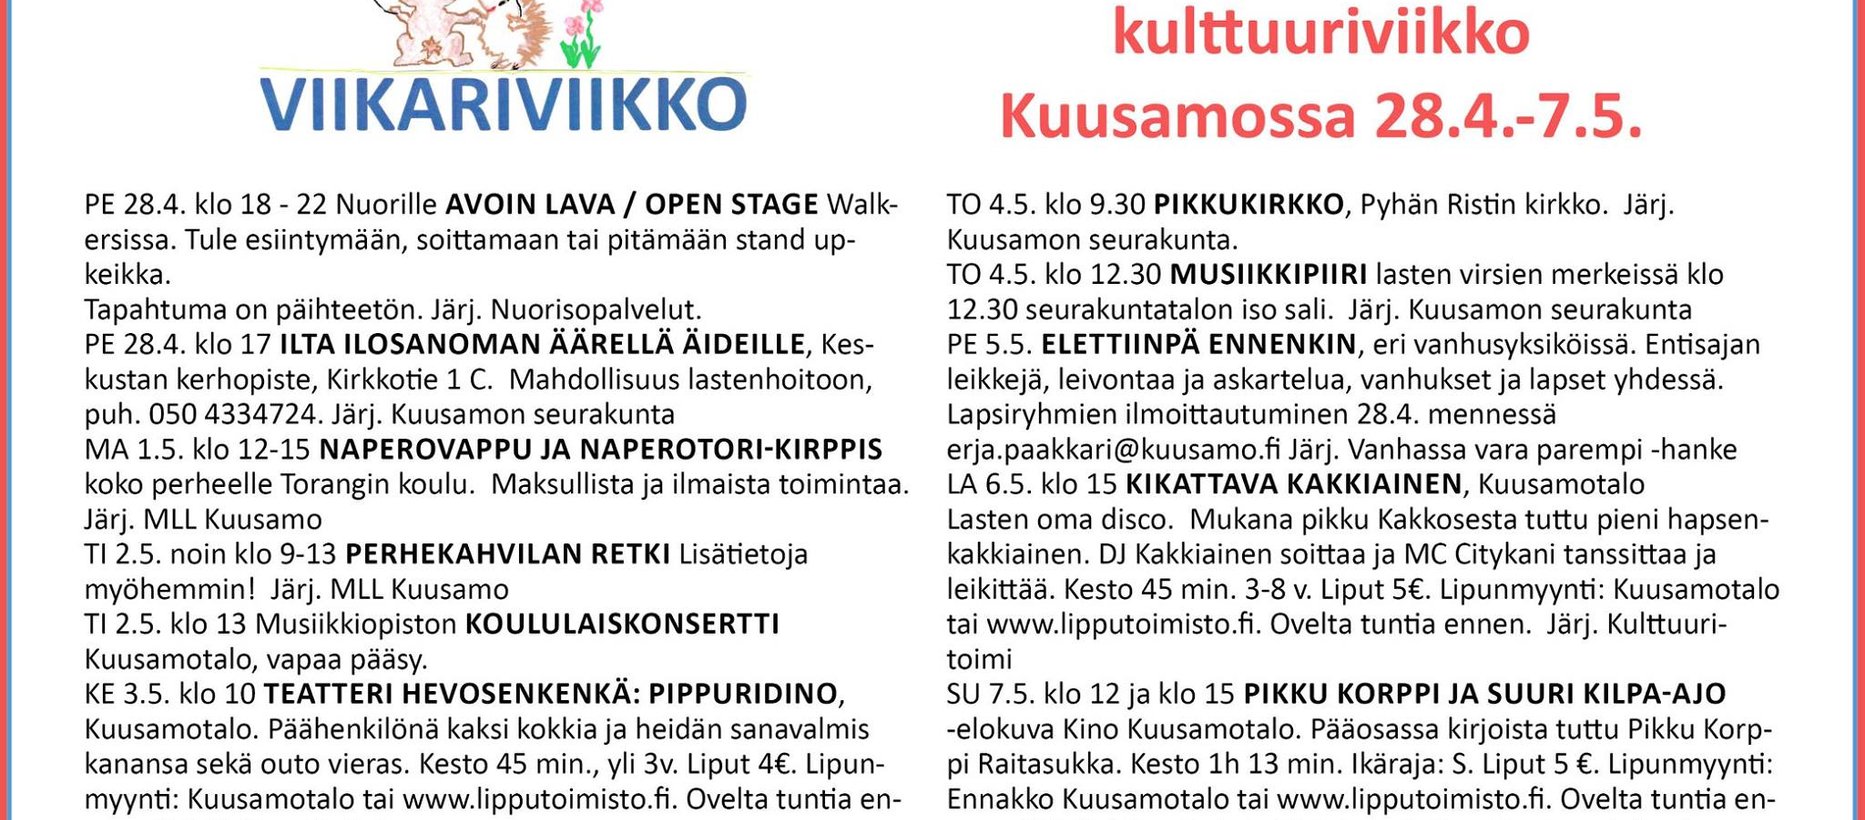 viikariviikko_ilmo_valmis.pdf